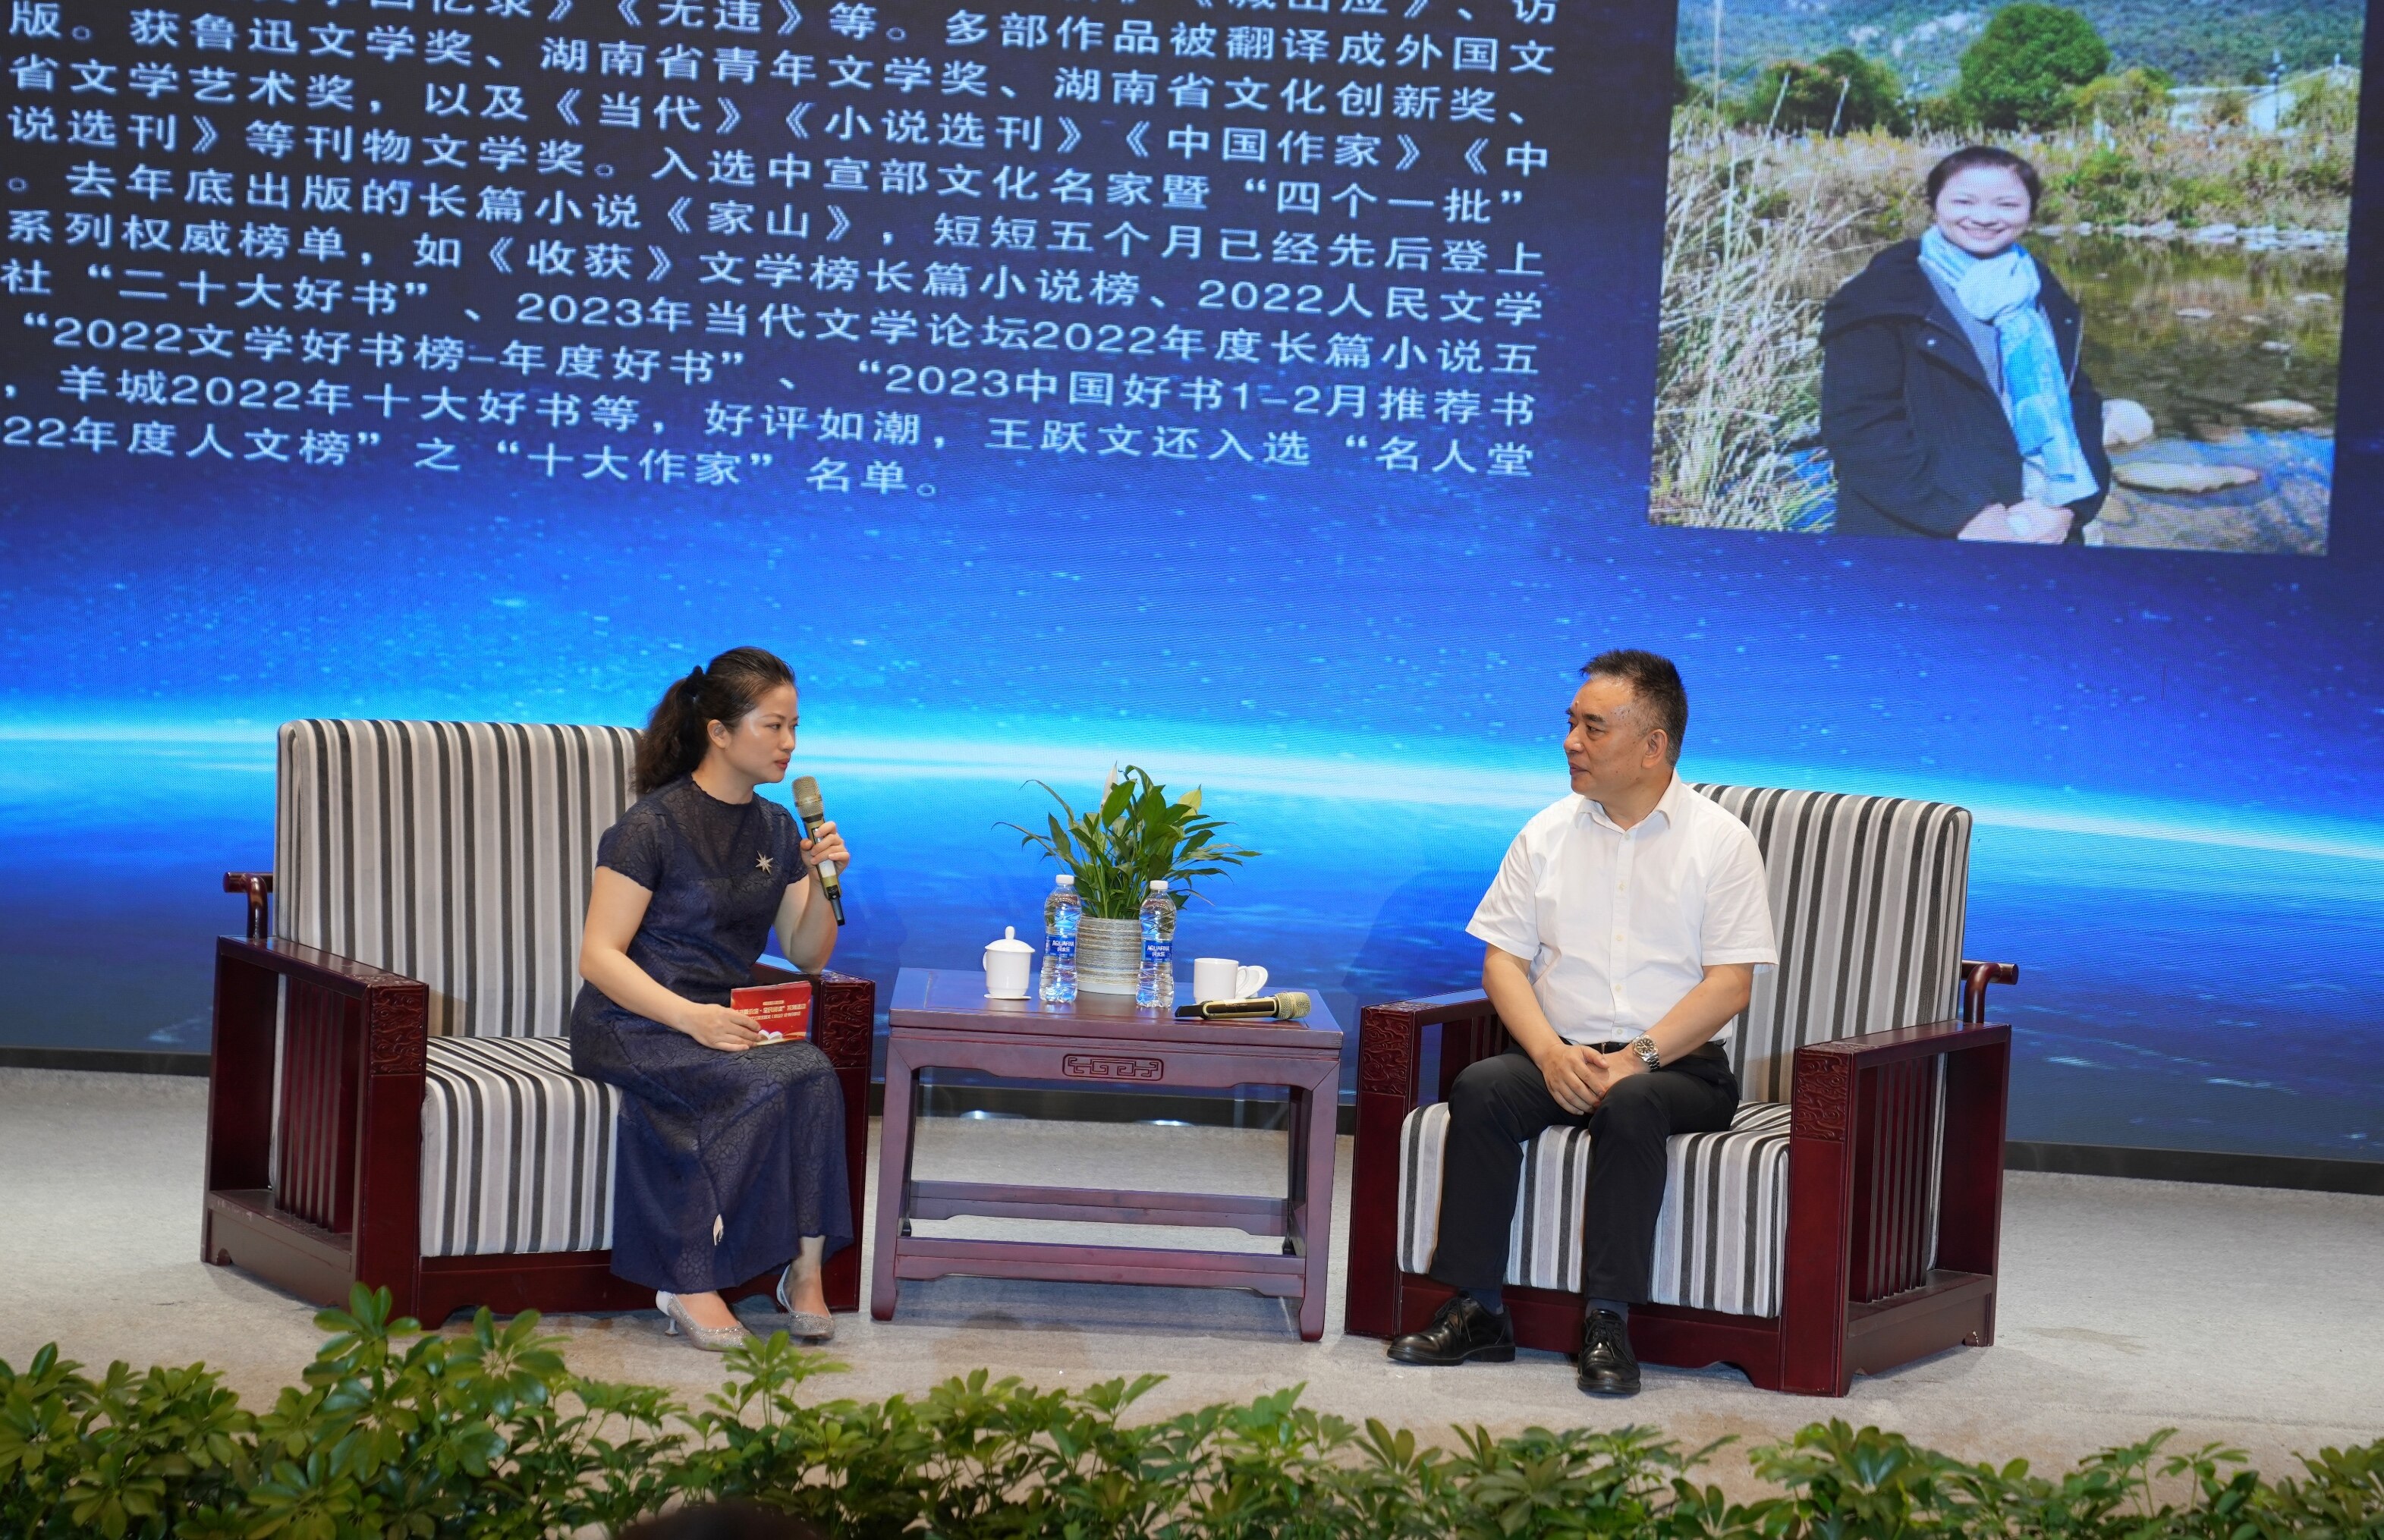 中国文联网络文艺传播中心副调研员胡艳琳女士与王跃文一起共话阅读。